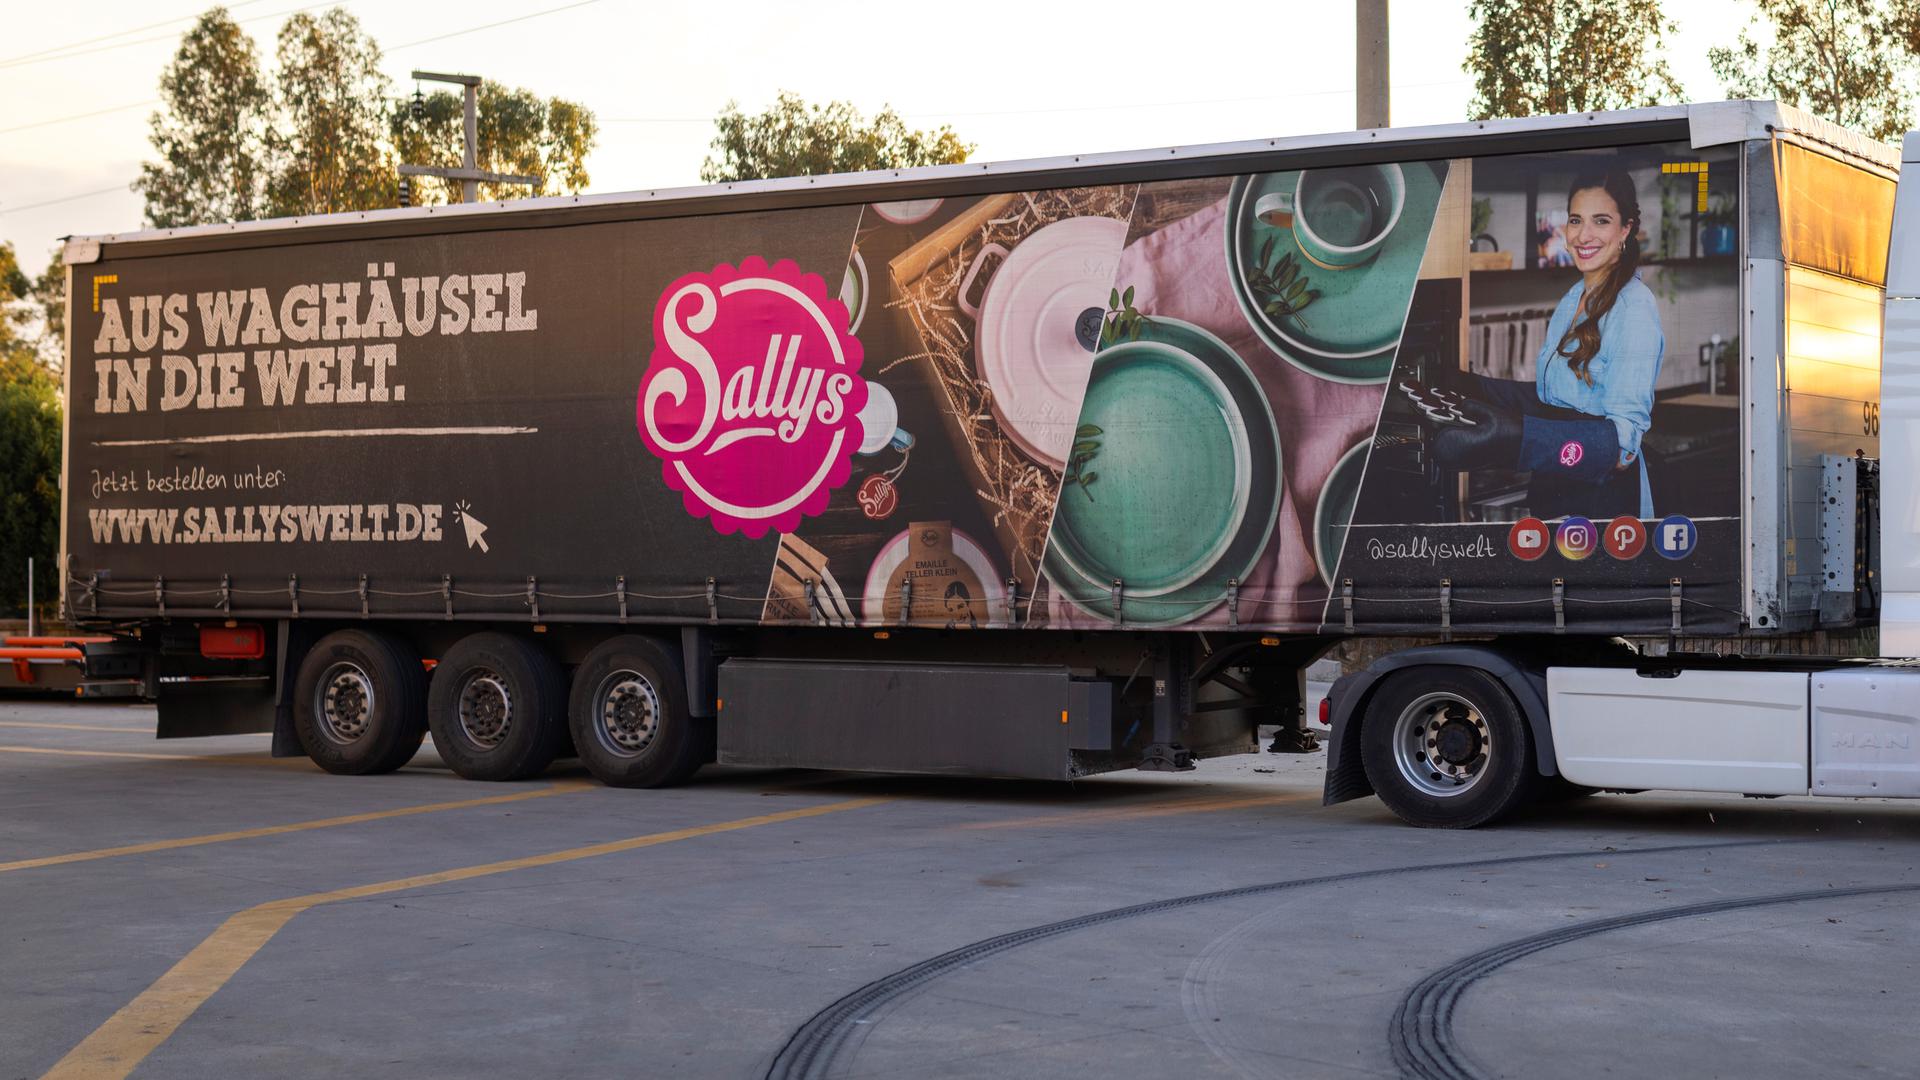 Gut gemeint: Online-Unternehmerin Saliha Özcan aus Waghäusel will mehrere ihrer Sally-Trucks mit privaten Sachspenden in die Türkei schicken. Katastrophen-Experten sehen das kritisch.